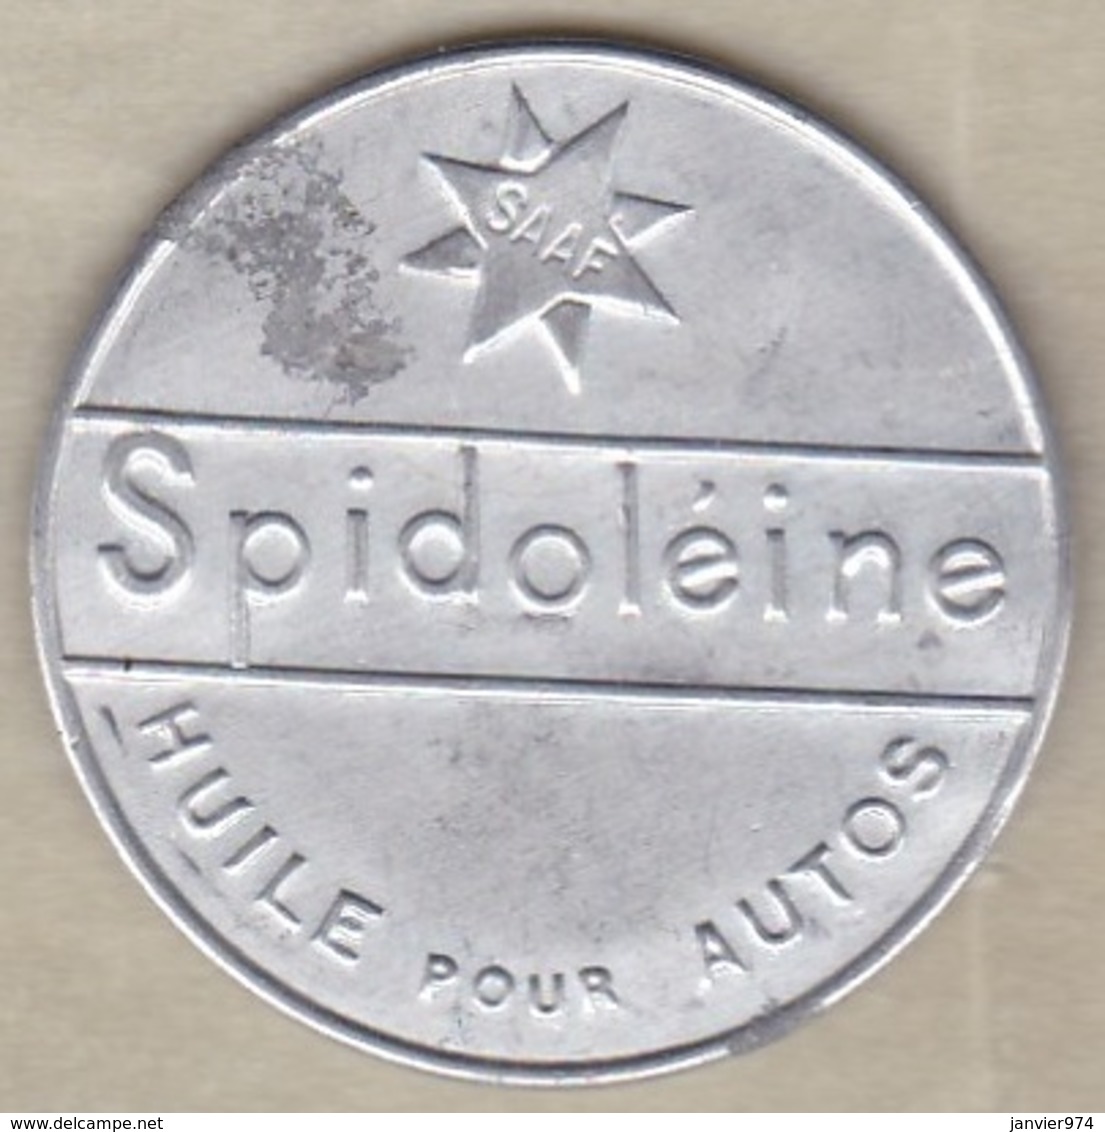 Timbre Monnaie " SPIDOLEINE " Huile Pour Autos. 10 Centimes Semeuse - Monétaires / De Nécessité